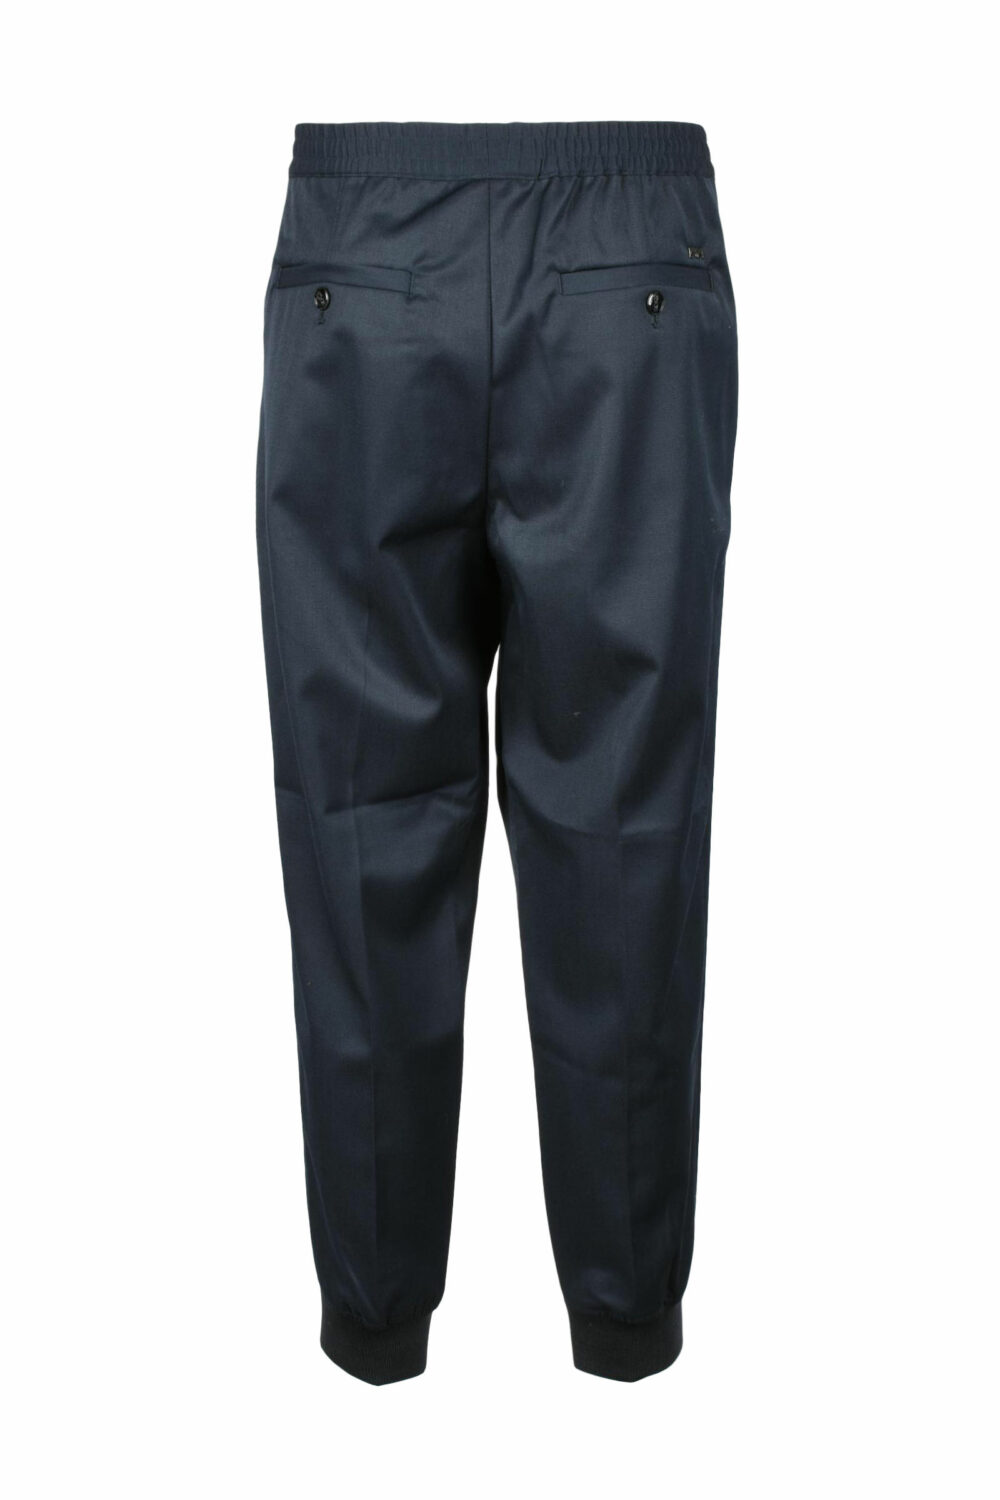 Pantaloni Emporio Armani Blu - Foto 2